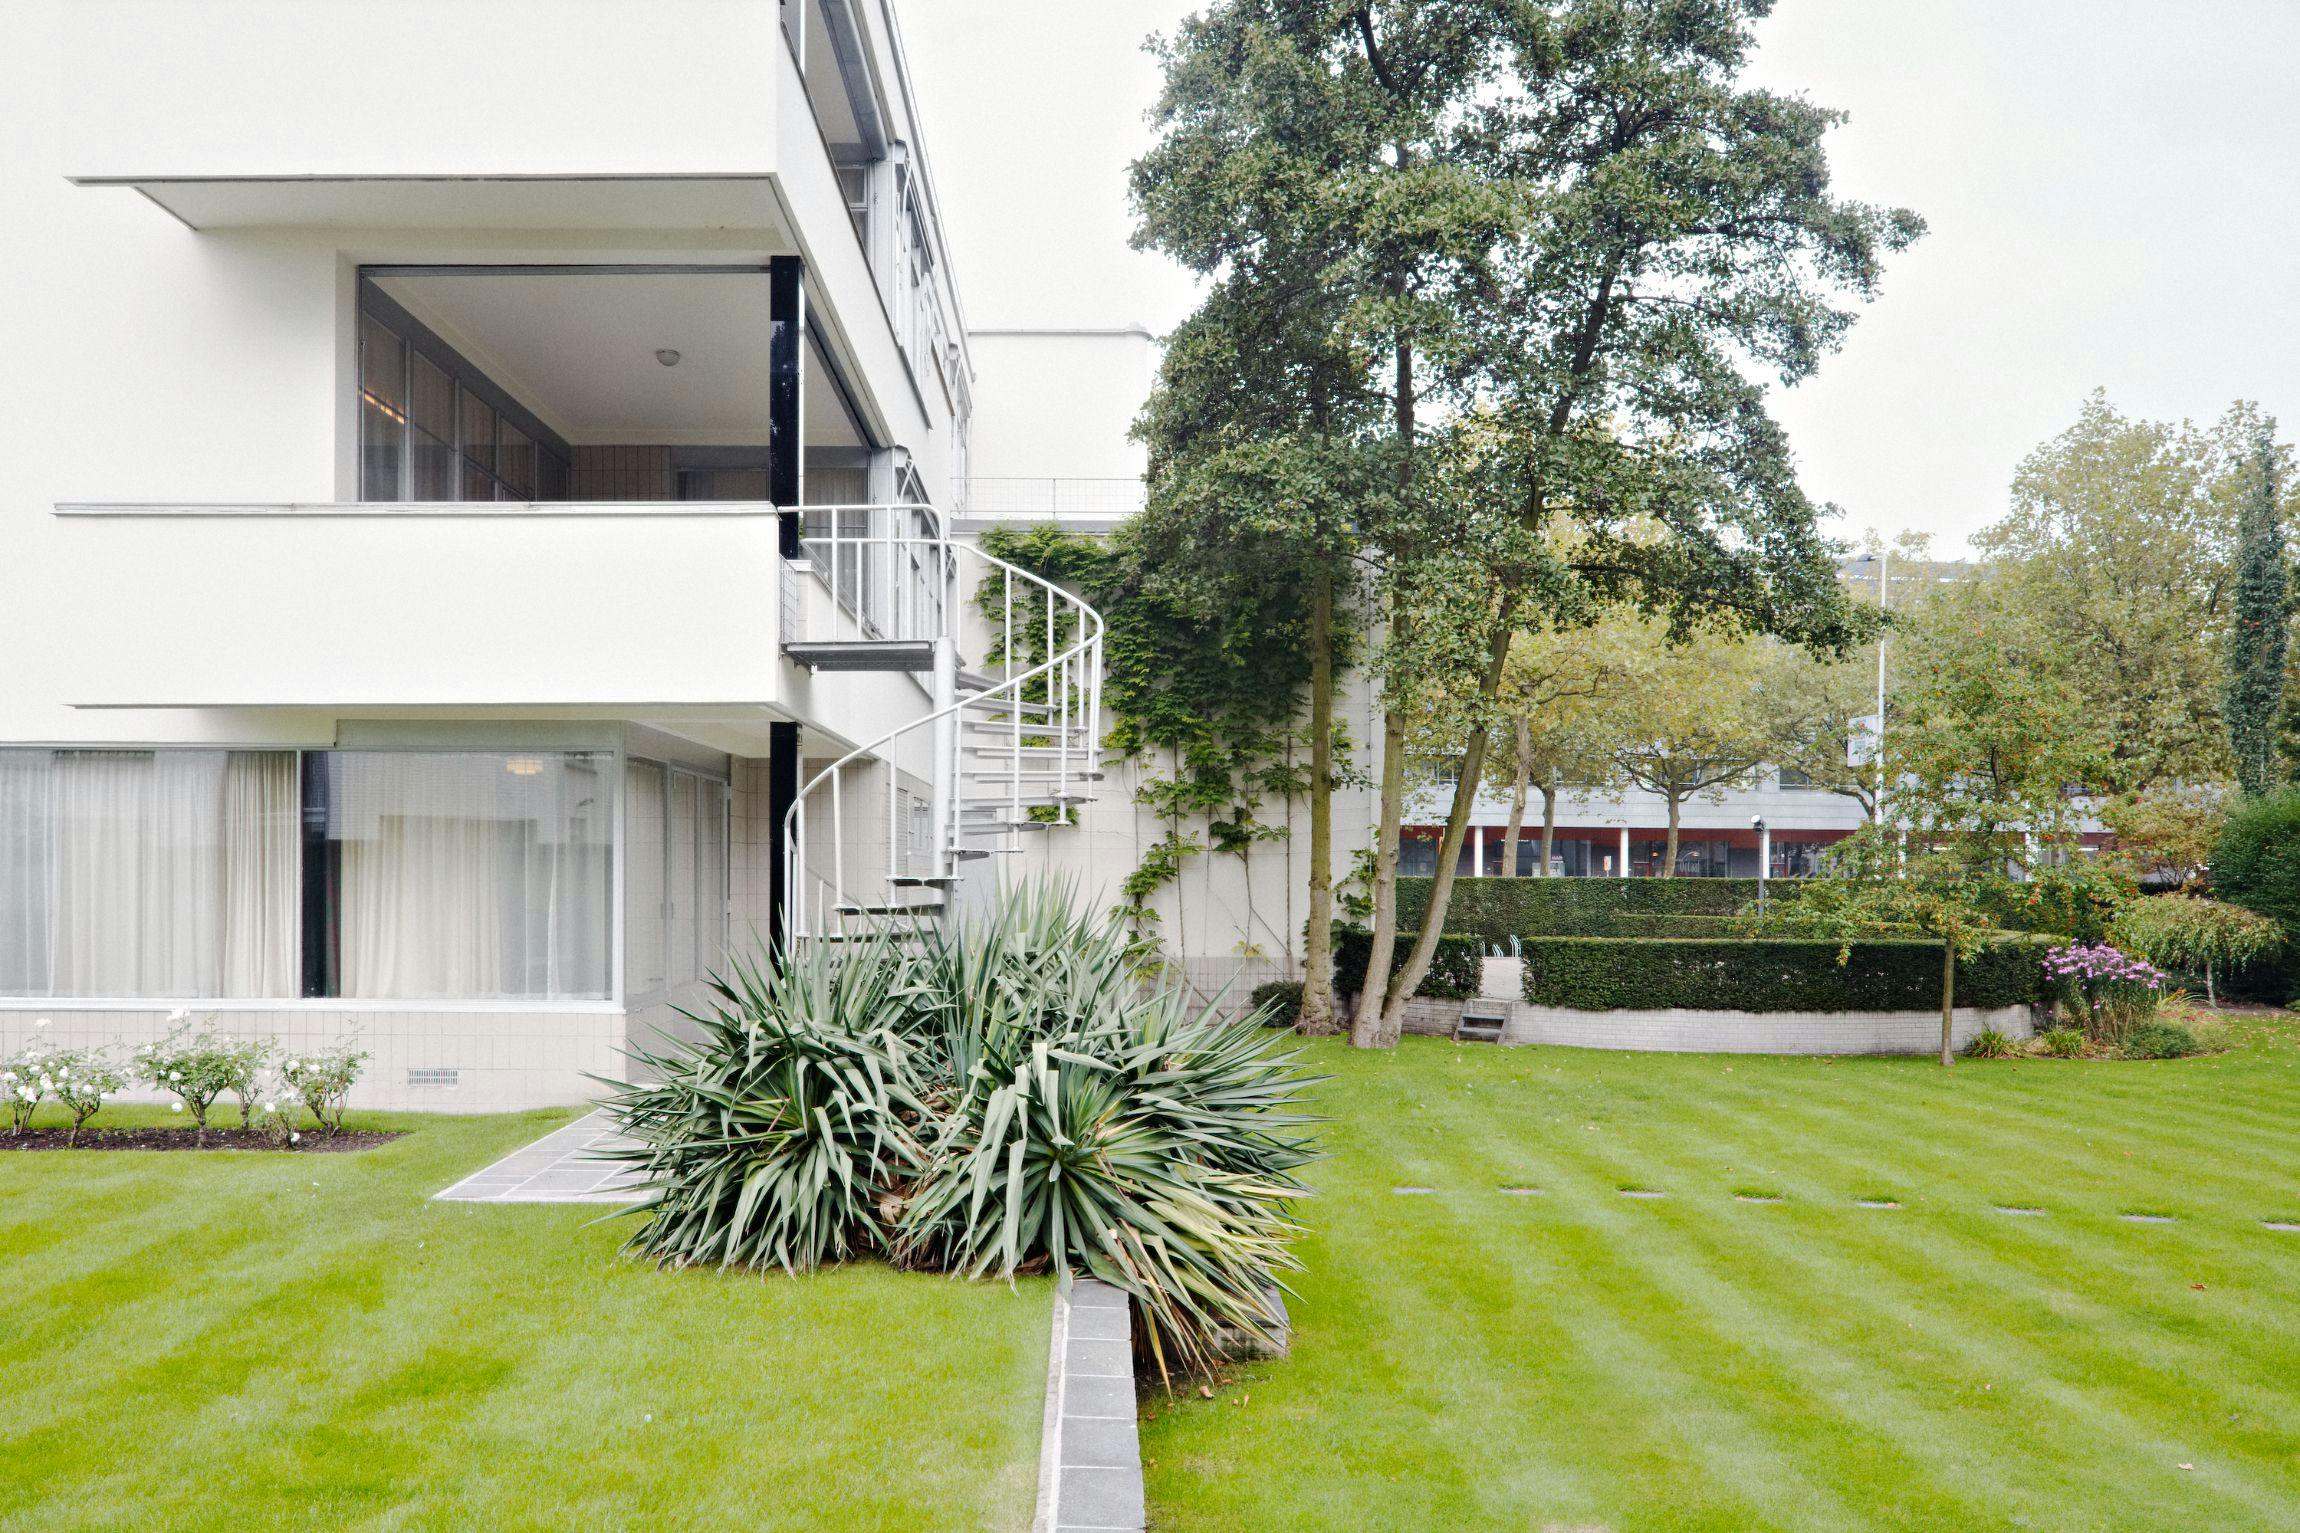 Huis Sonneveld, exterieur en tuin. Architectuur door Brinkman en Van der Vlugt. Foto Johannes Schwartz 